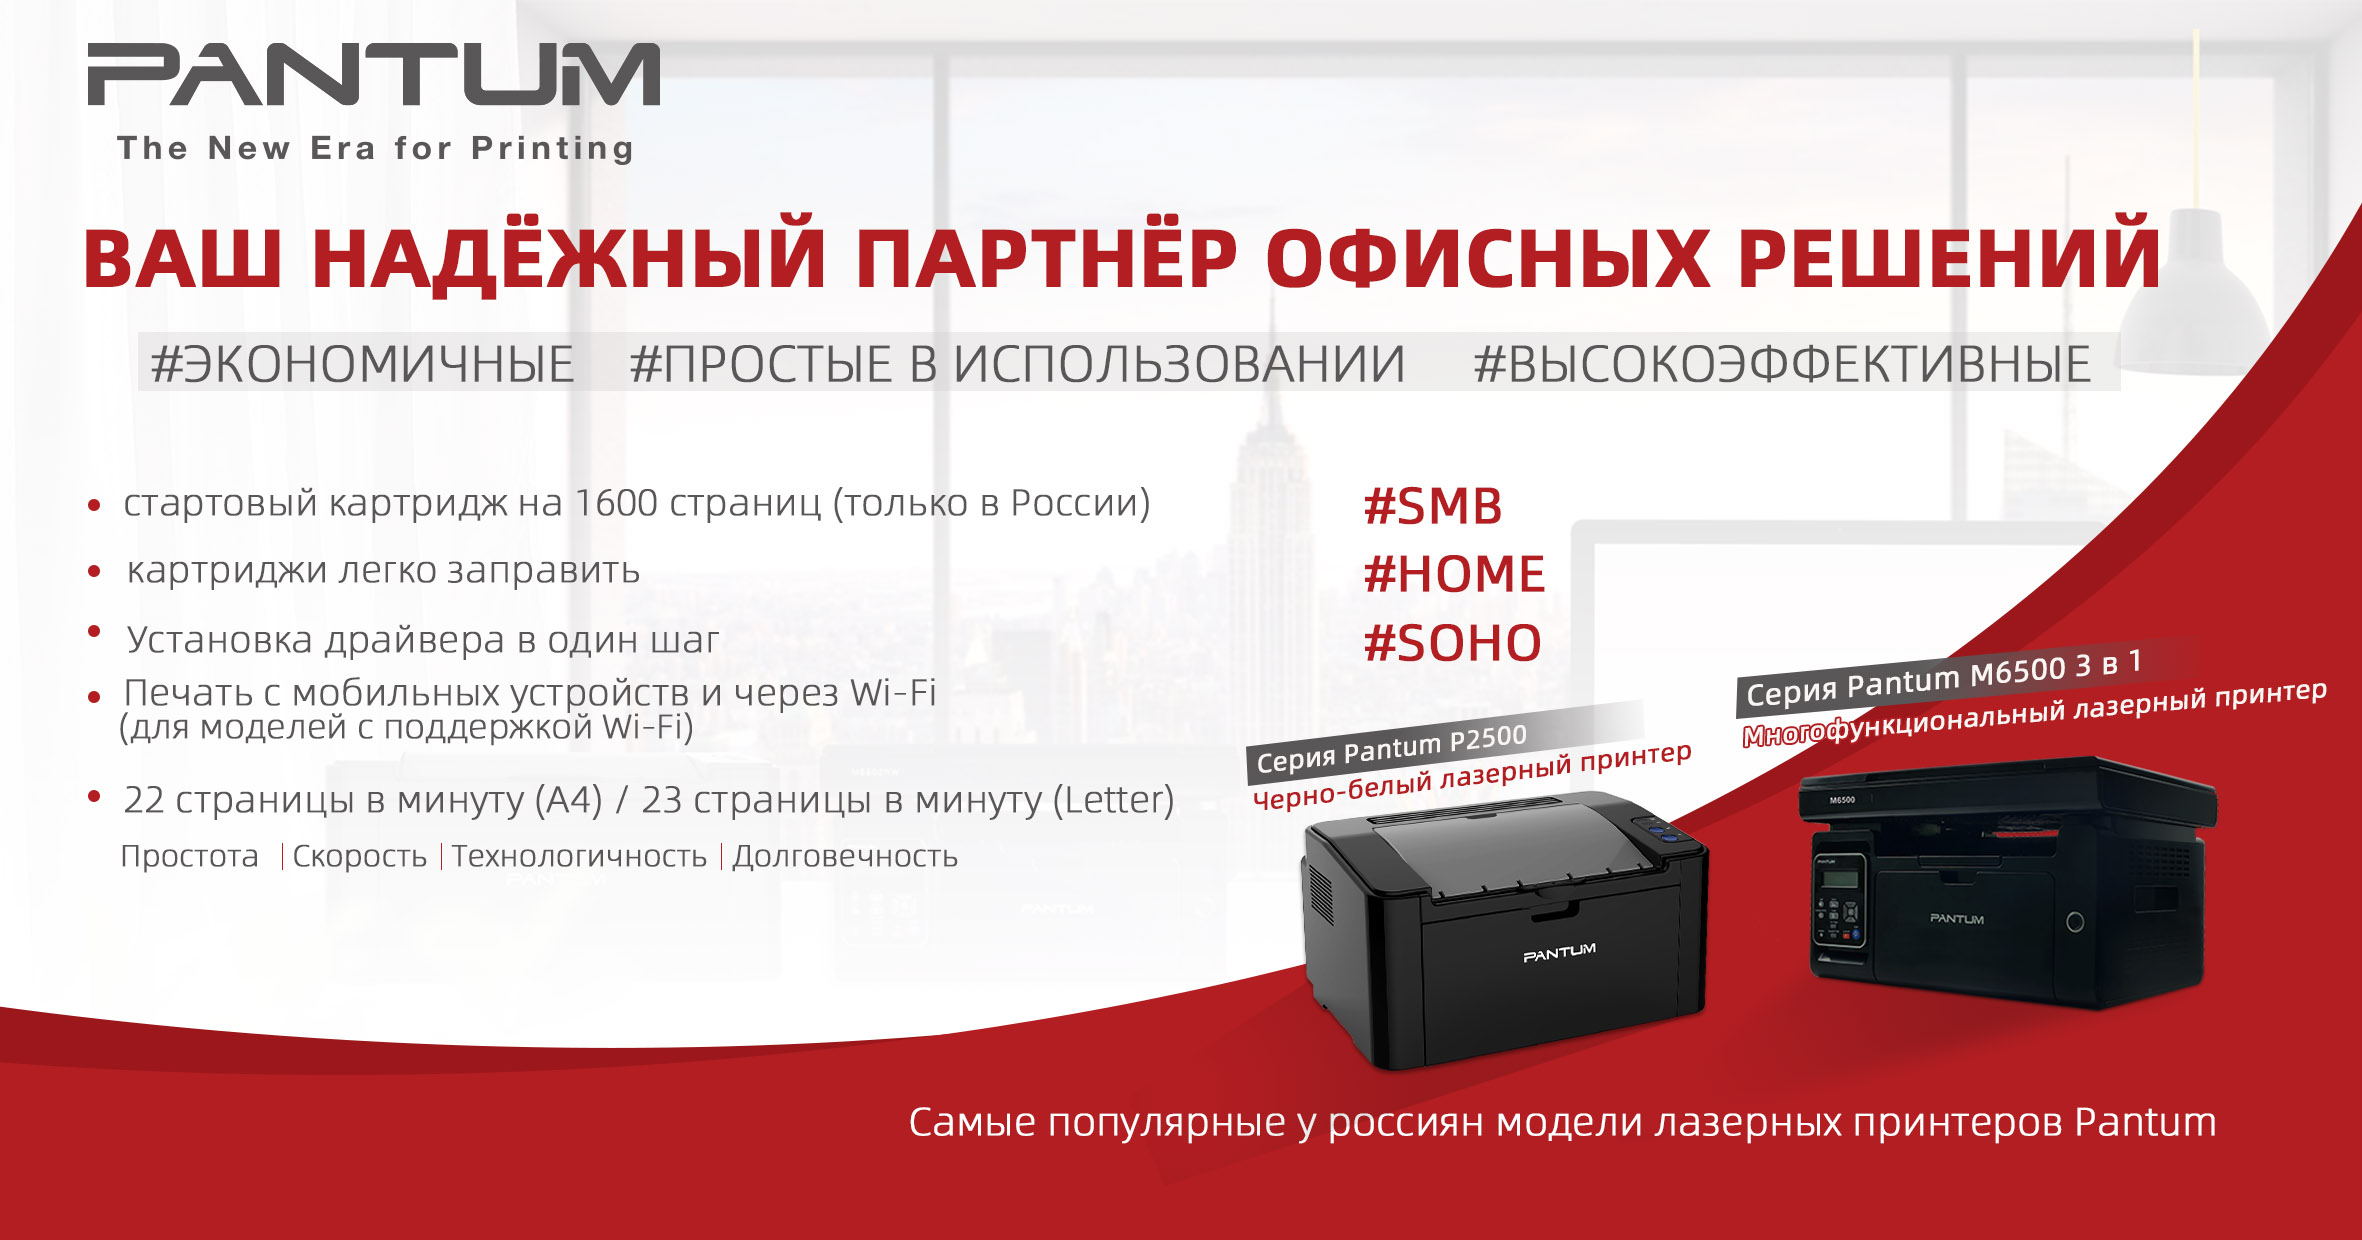 фото: Pantum стал одним из самых популярных брендов принтеров в России